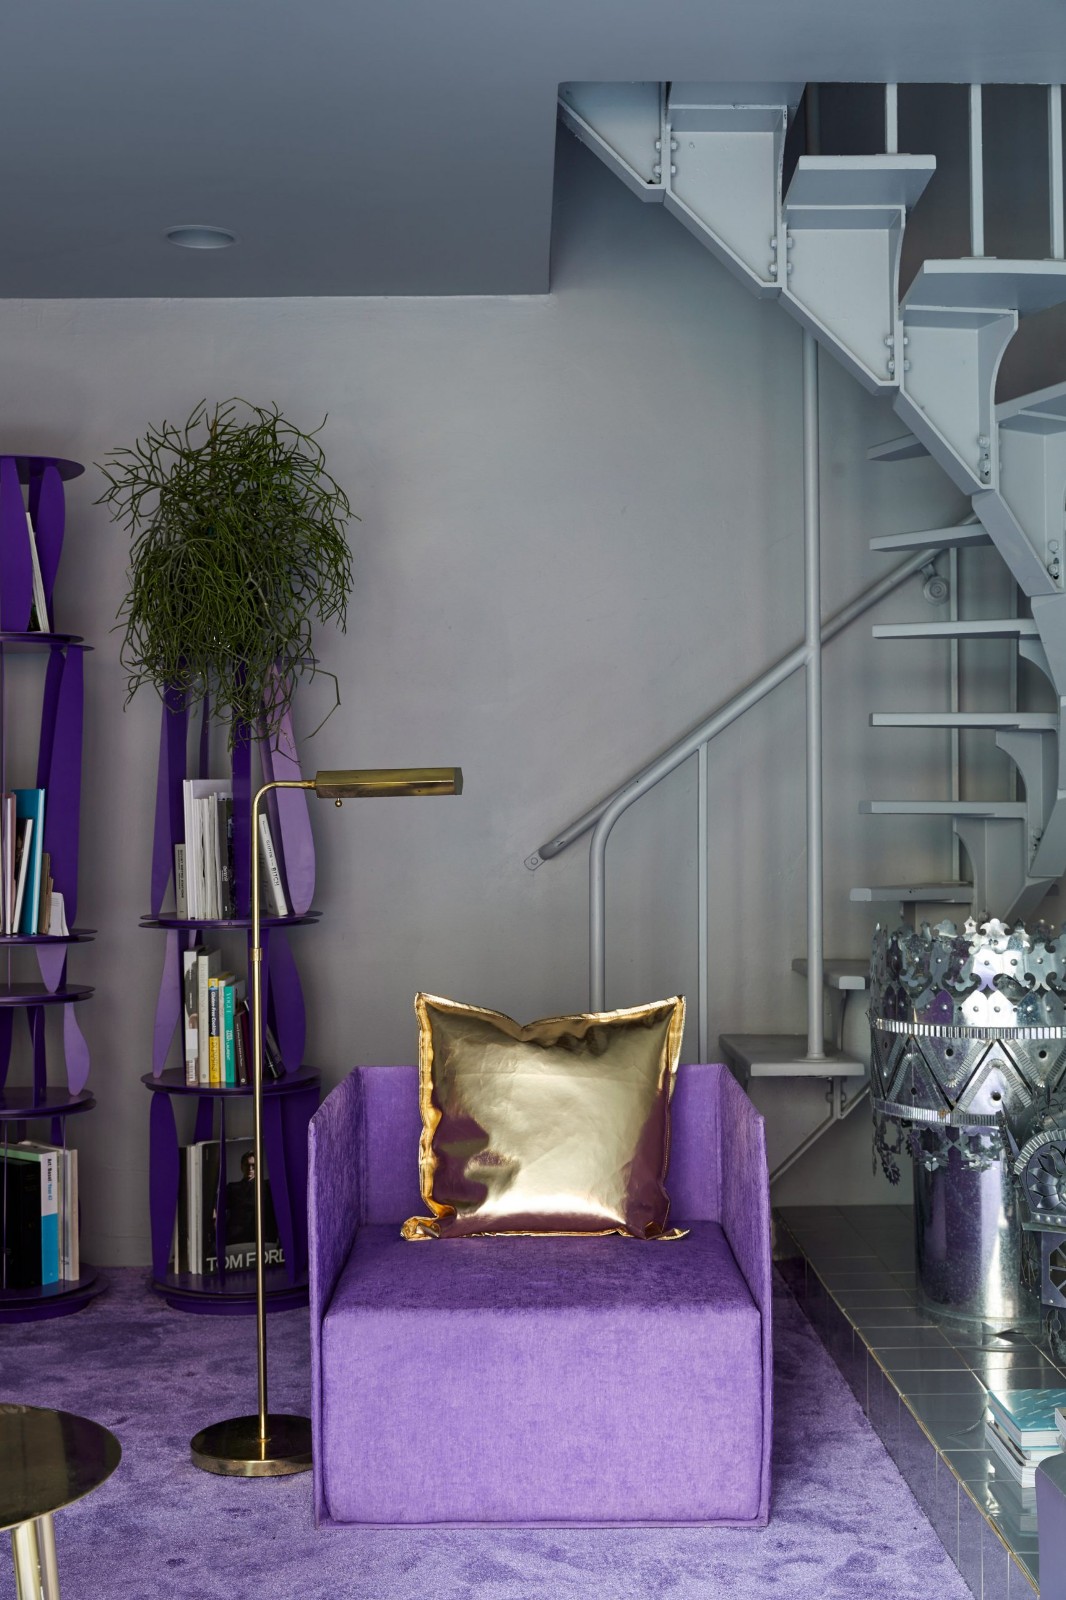 设计师自宅翻新设计——紫罗兰色的精致简约 | Crosby Studios